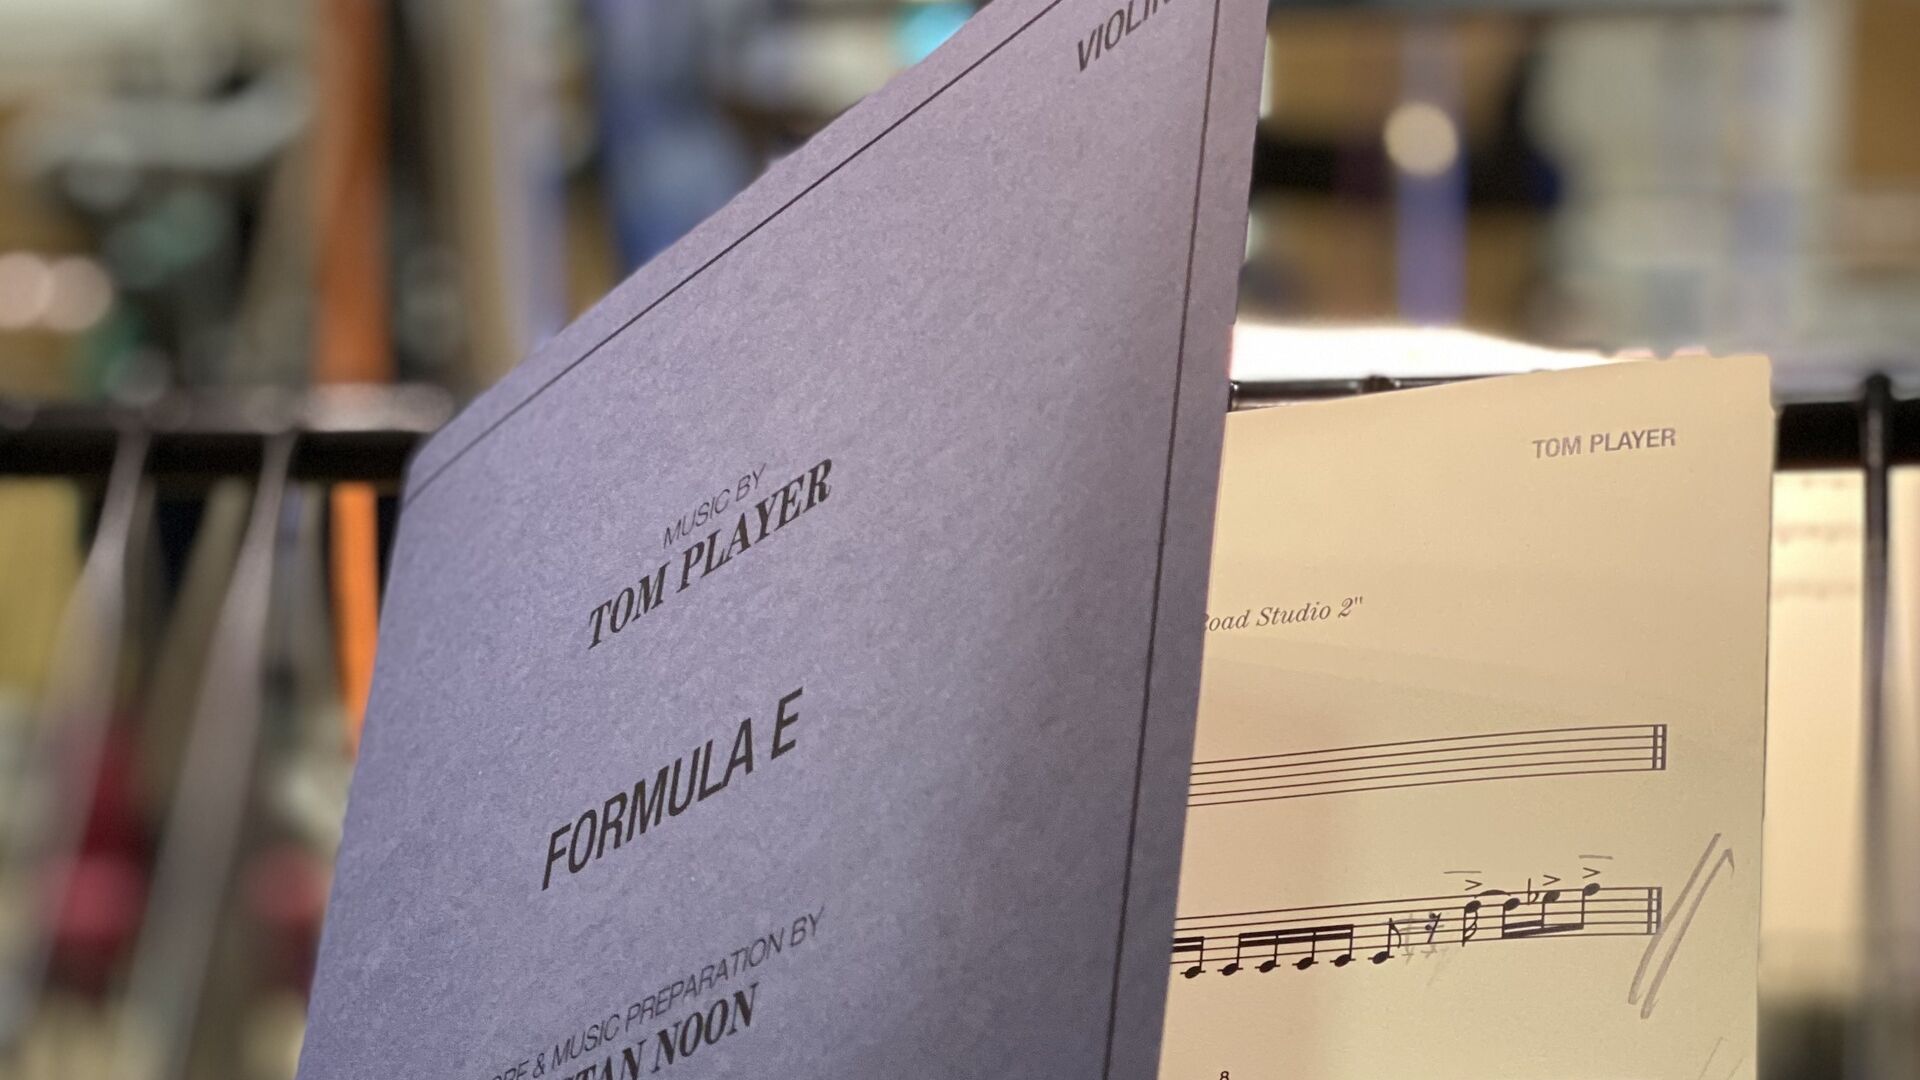 Formula E: корицата на албума „Change. Accelerated (The Official Formula E Soundtrack)“ от Tom Player, който съдържа седем песни: сред тях песните „Rising“ (Основни заглавия), „Resolution“ (Резултати) и „Vamos“ (Подиум), всички записани на живо с Оркестър от 55 души в Abbey Road Studios